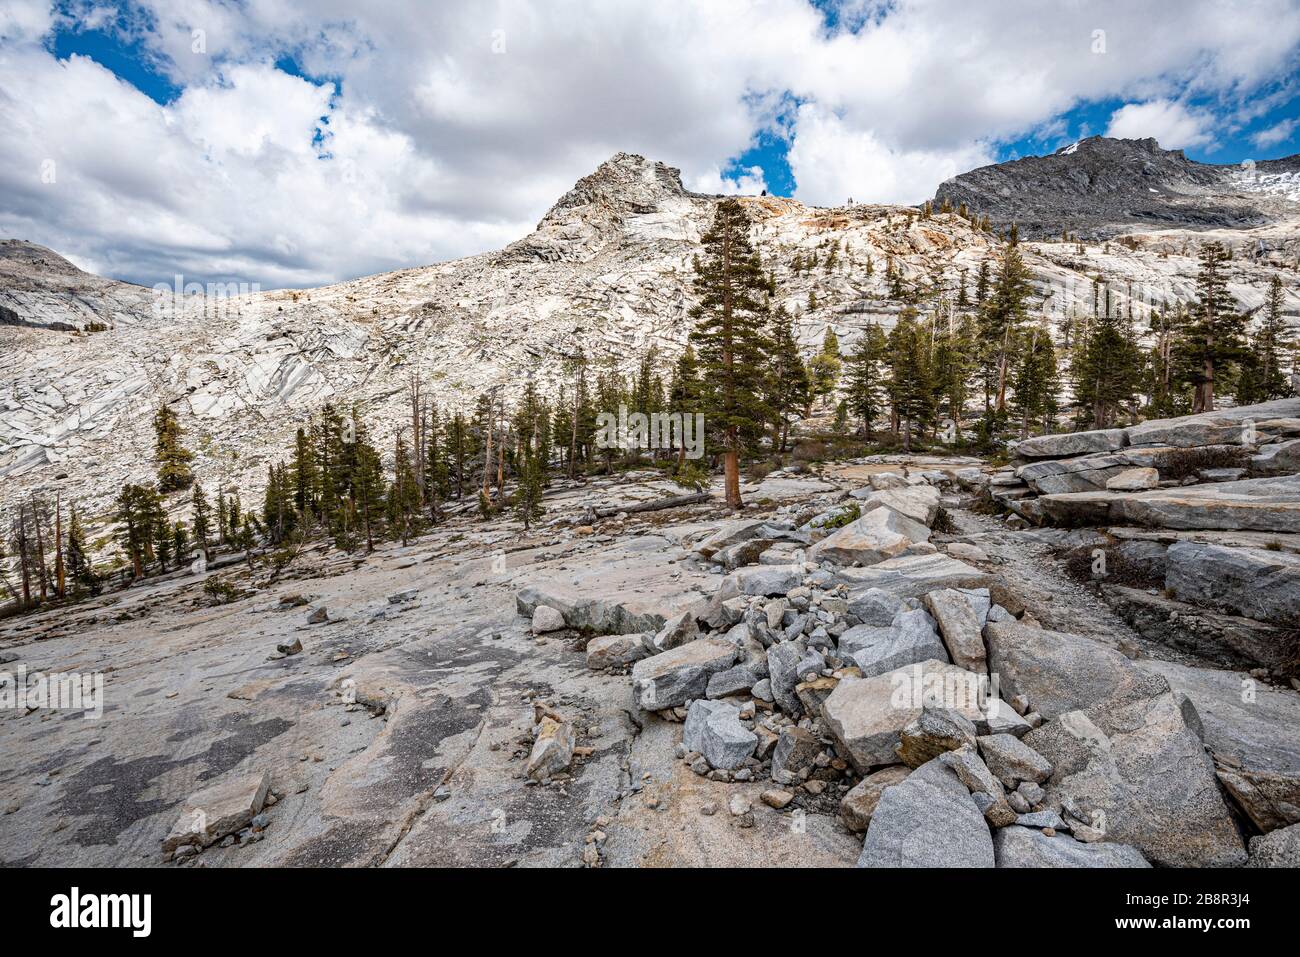 Le sentier Lakes Trail du parc national Sequoia offre une vue imprenable sur les montagnes de granit poli de la Sierra Nevada Range. Banque D'Images